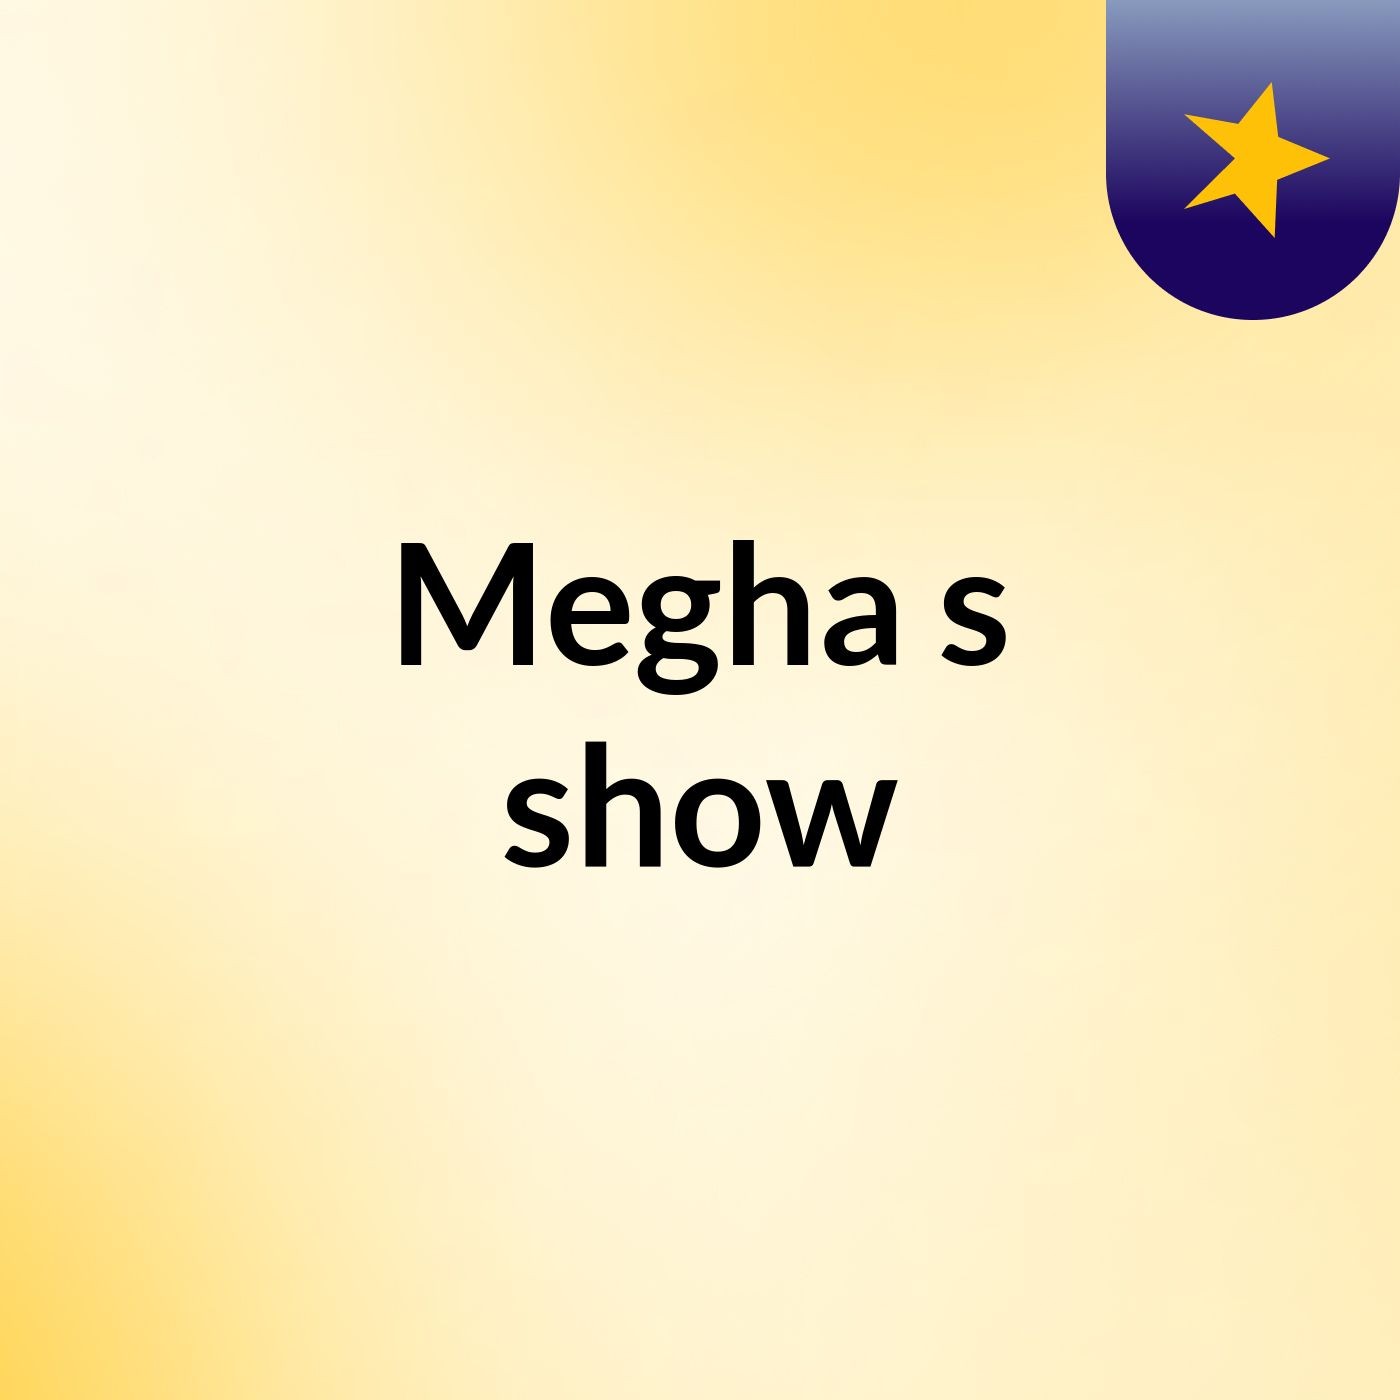 Megha's show